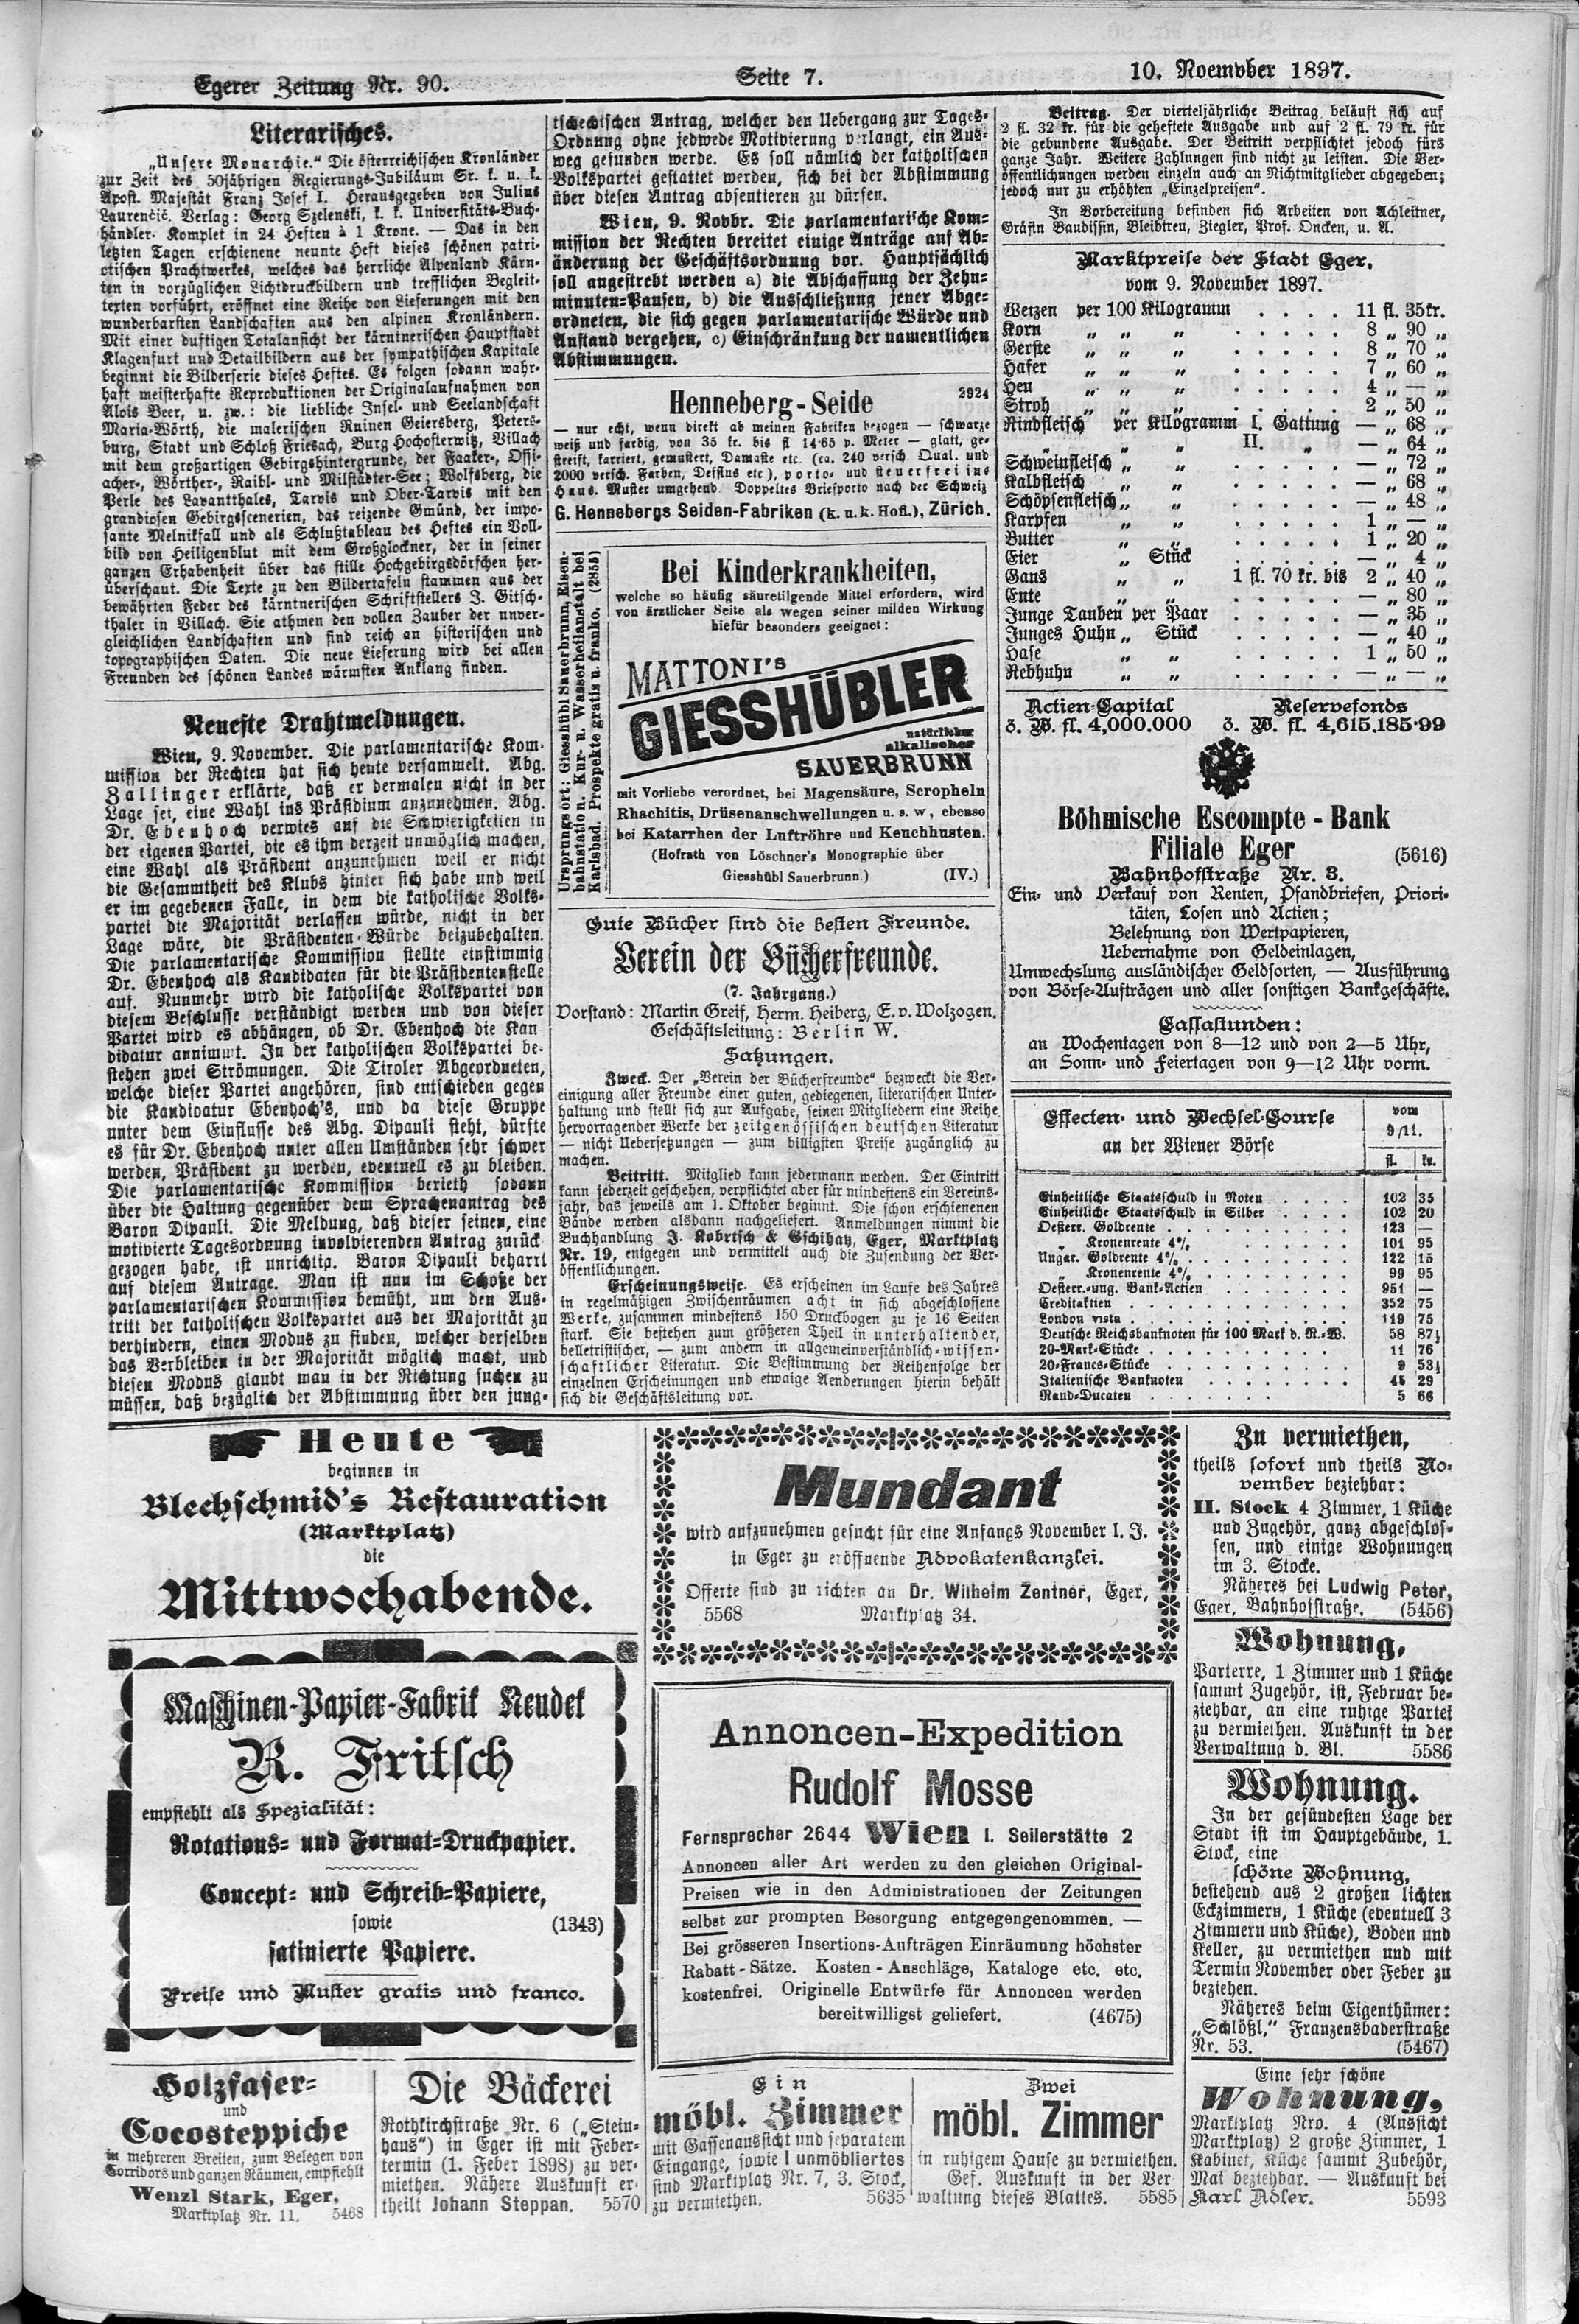 7. egerer-zeitung-1897-11-10-n90_4485